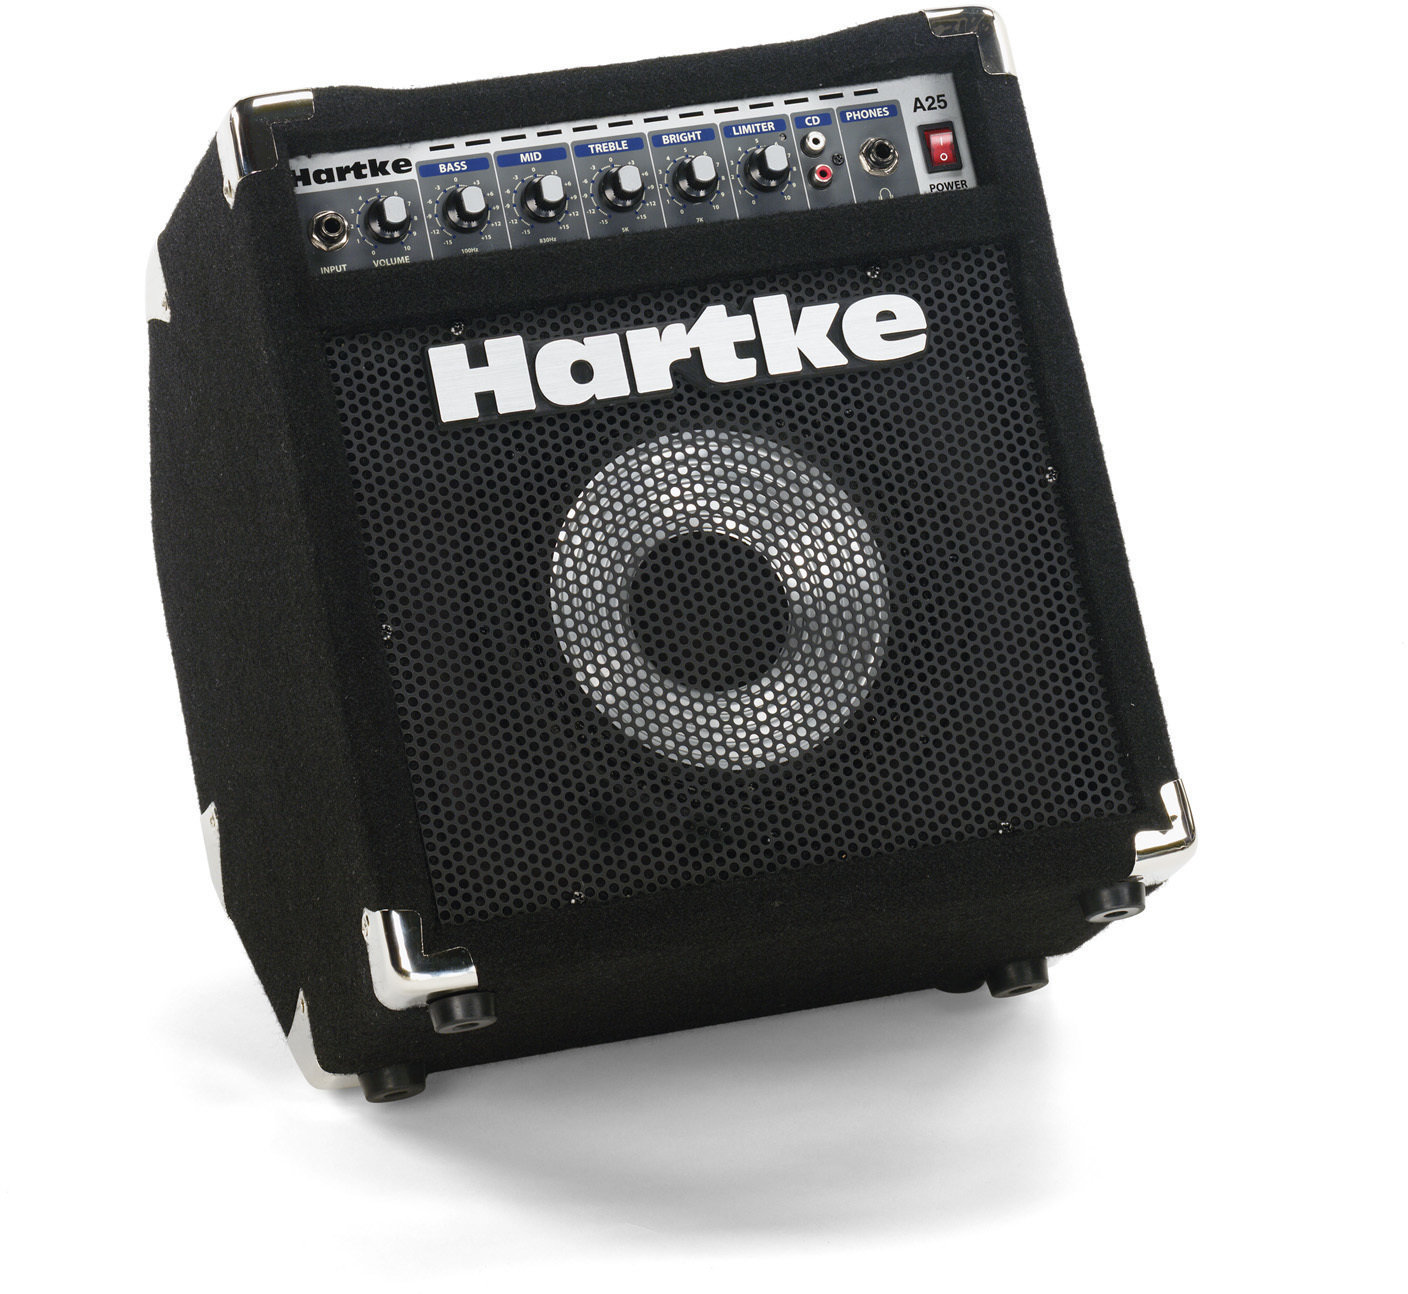 Small Bass Combo Hartke A25